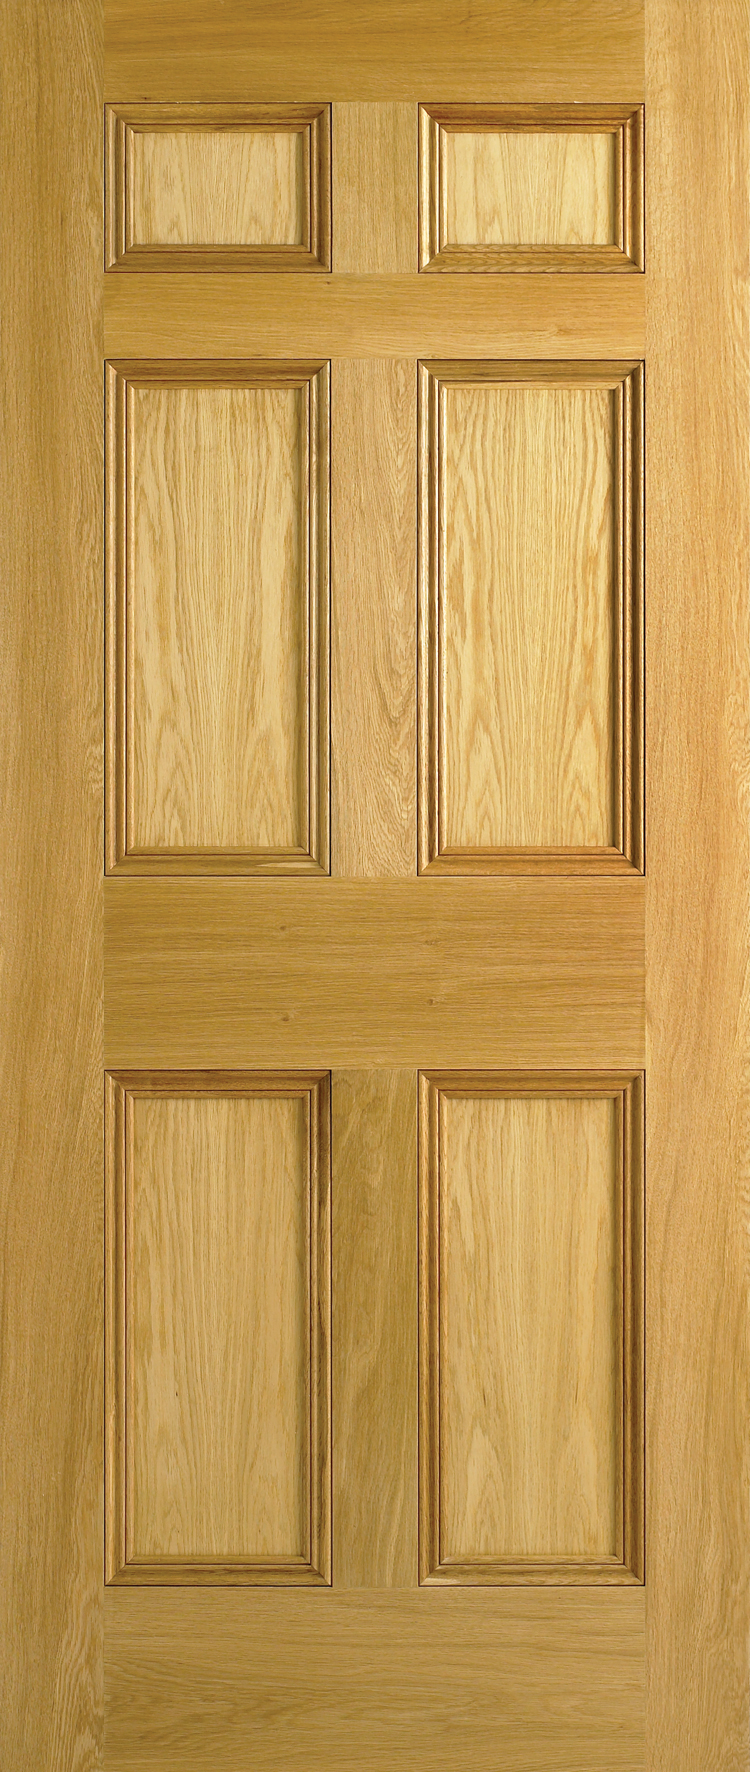 Door Panelling And Its Effect On Door Proportions Ukod Blog